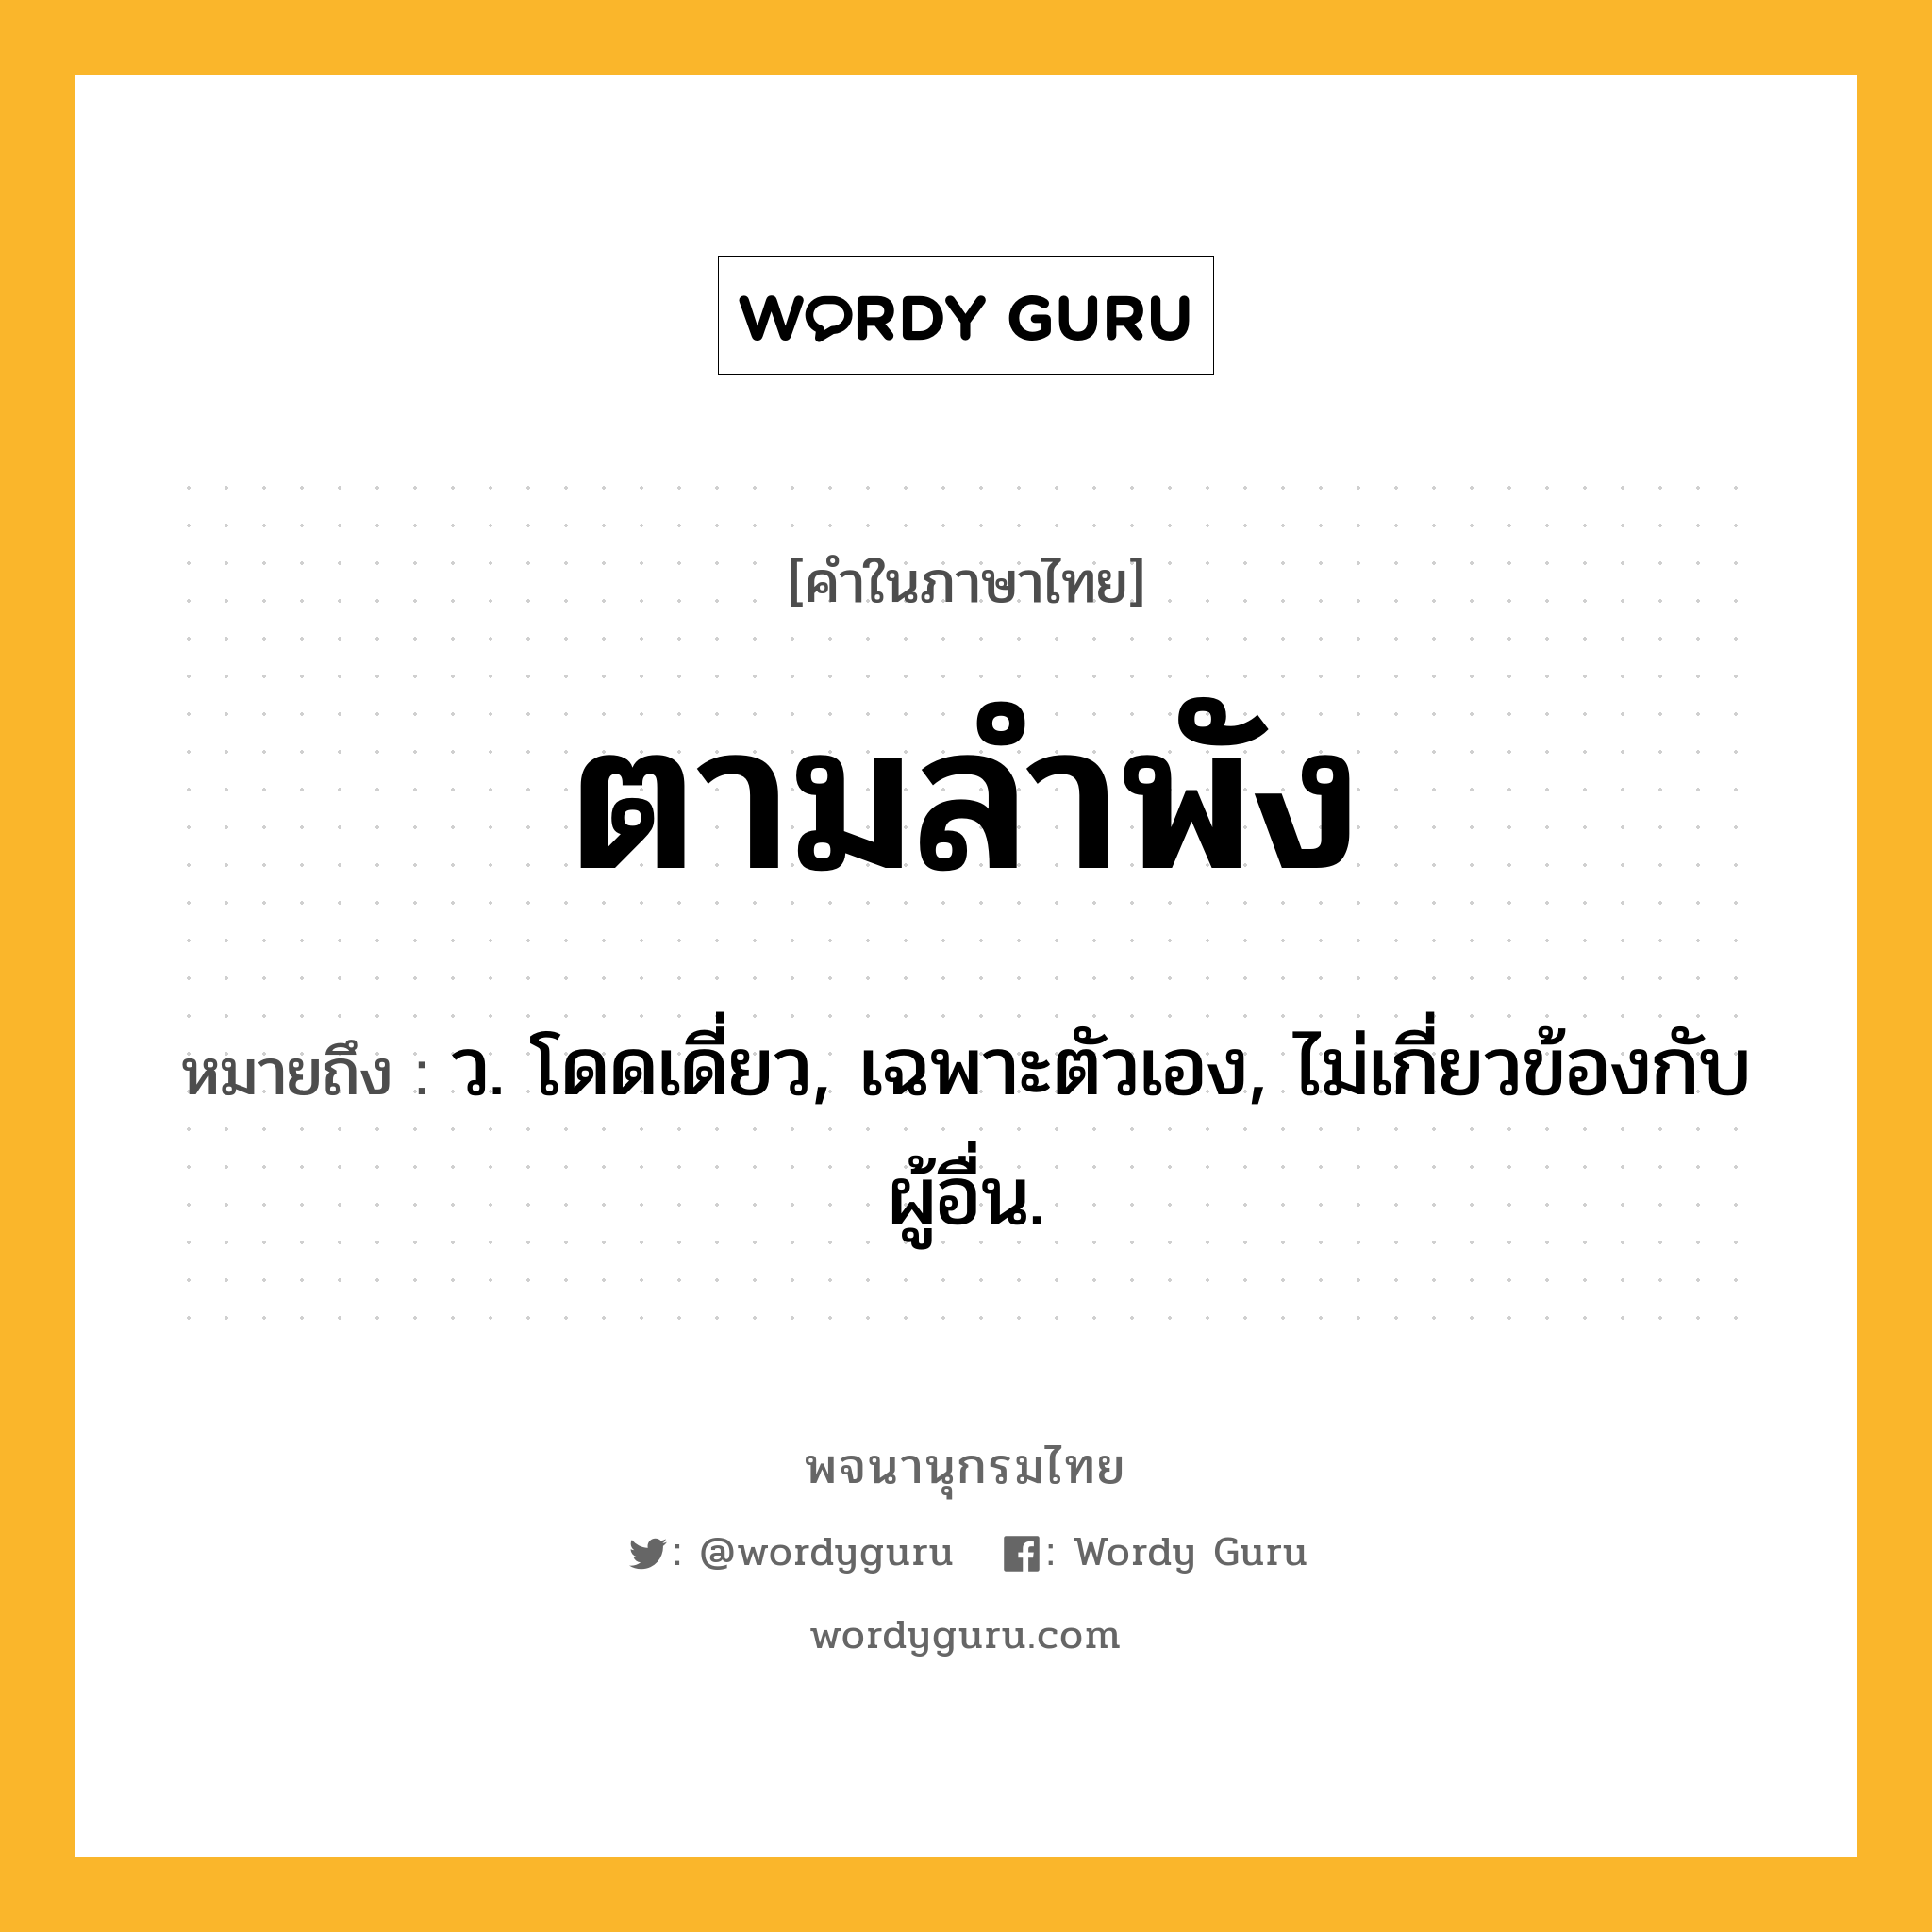 ตามลำพัง หมายถึงอะไร?, คำในภาษาไทย ตามลำพัง หมายถึง ว. โดดเดี่ยว, เฉพาะตัวเอง, ไม่เกี่ยวข้องกับผู้อื่น.